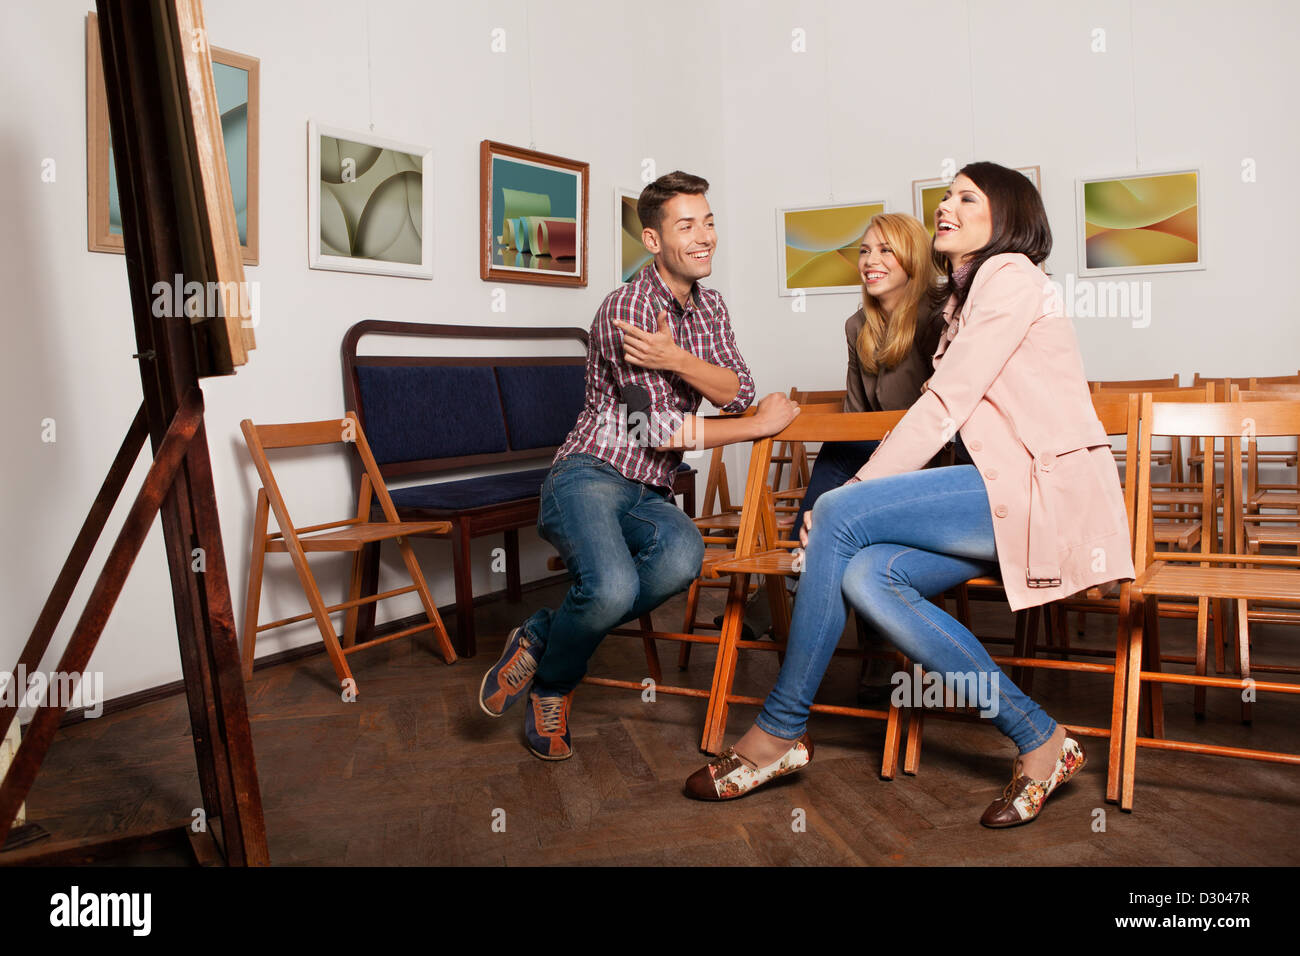 Les jeunes à la bonne personnes lors d'une exposition de photographie de s'asseoir sur des chaises en bois, riant et pointig vers une œuvre d'art. Banque D'Images